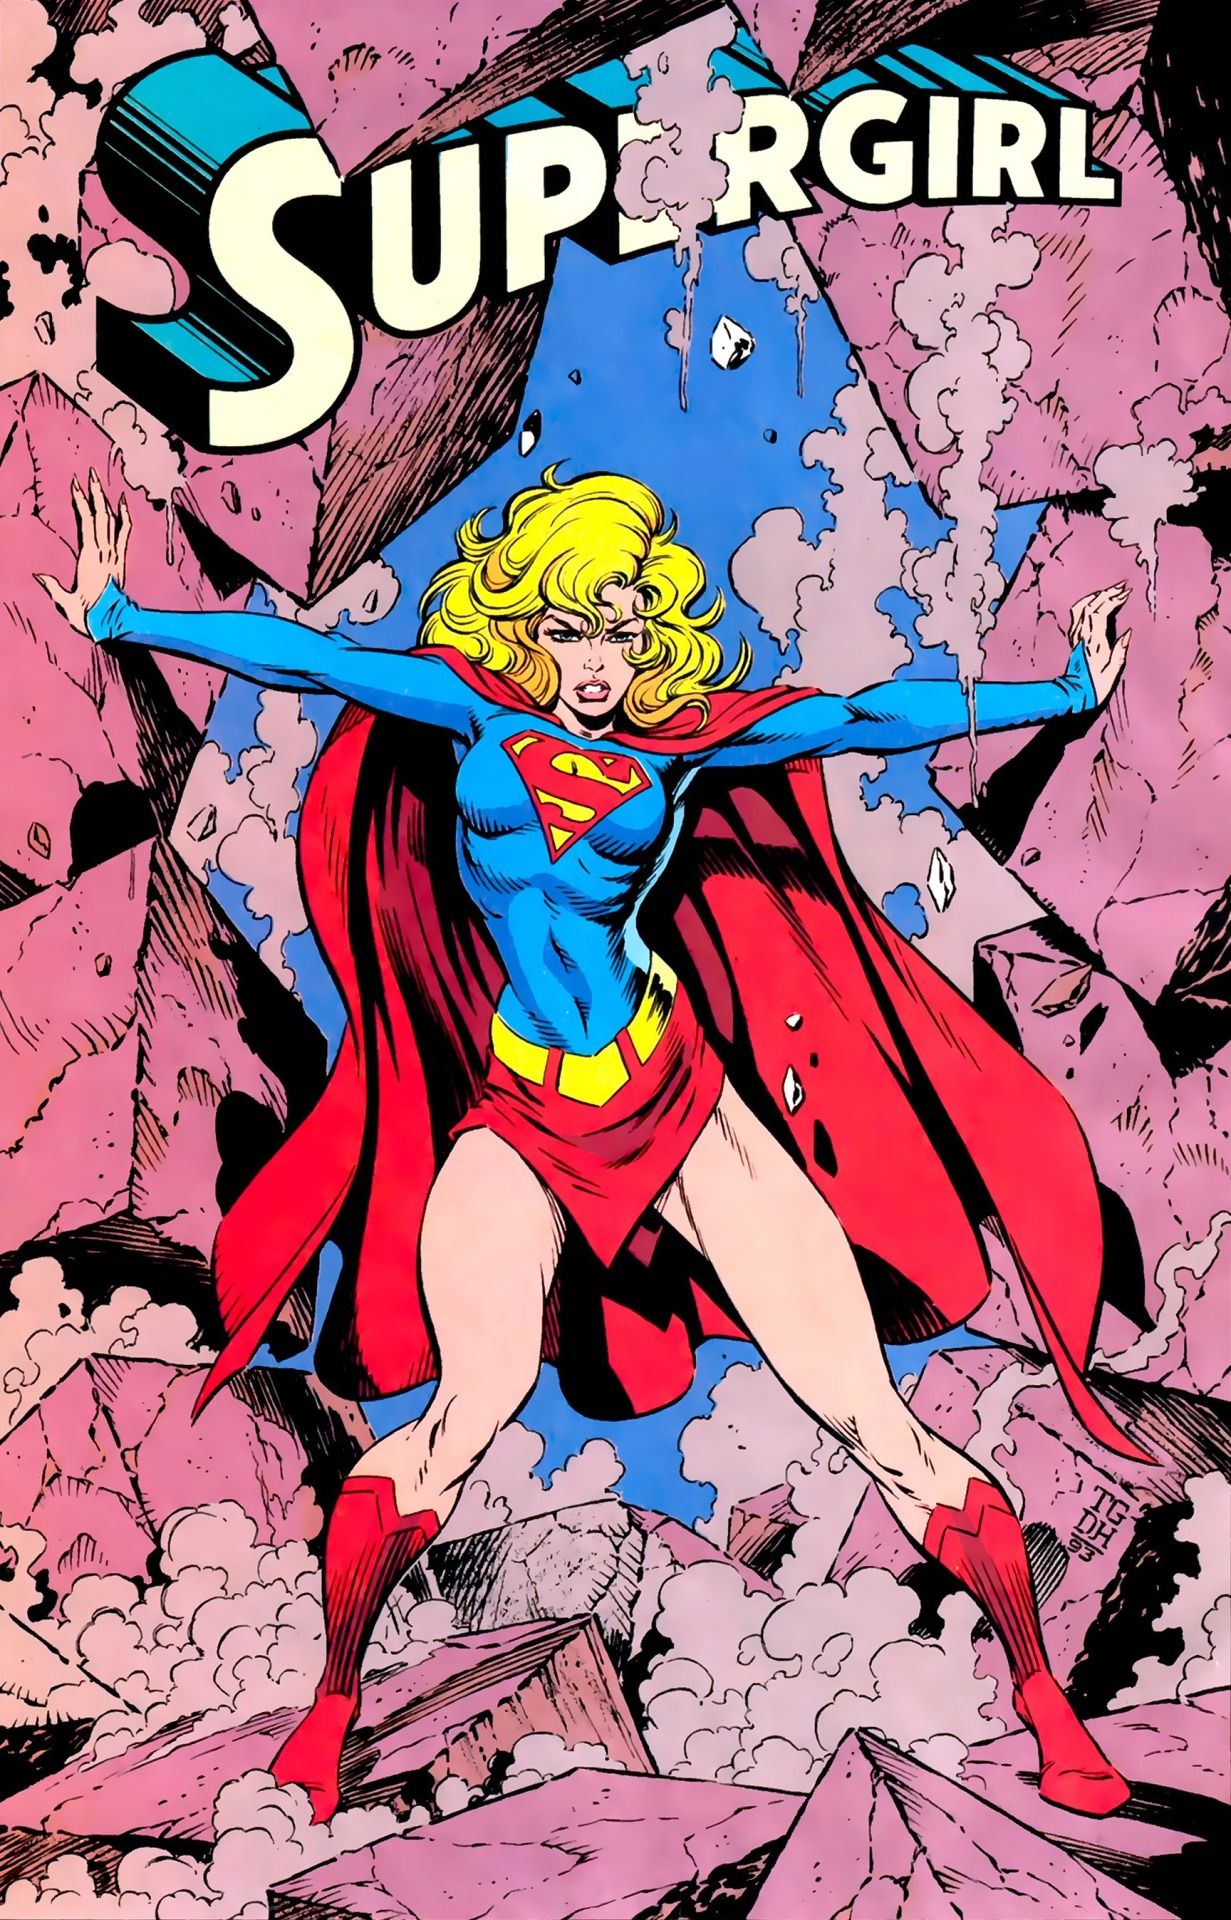 Capa de quadrinhos da Supergirl